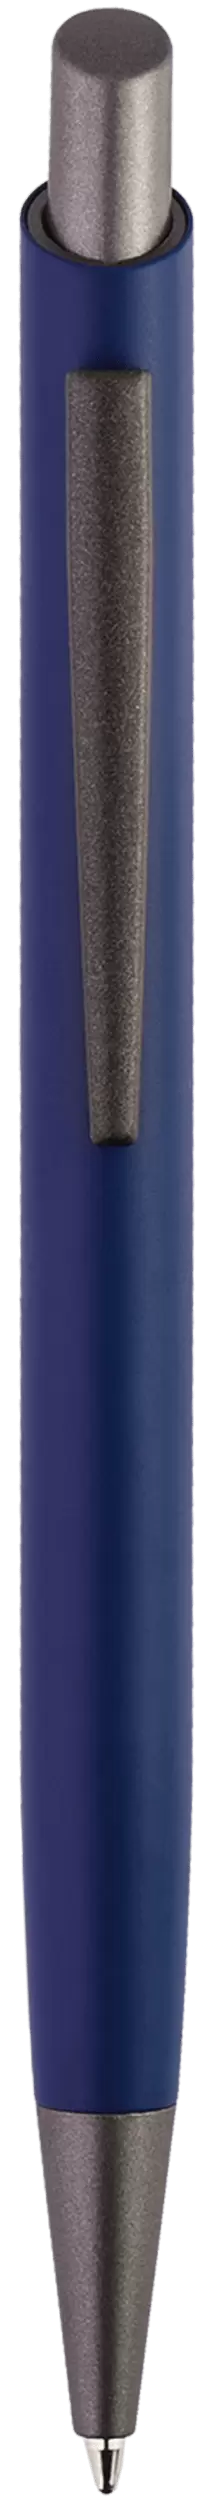 Ручка ELFARO TITAN Темно-синяя 3052.14